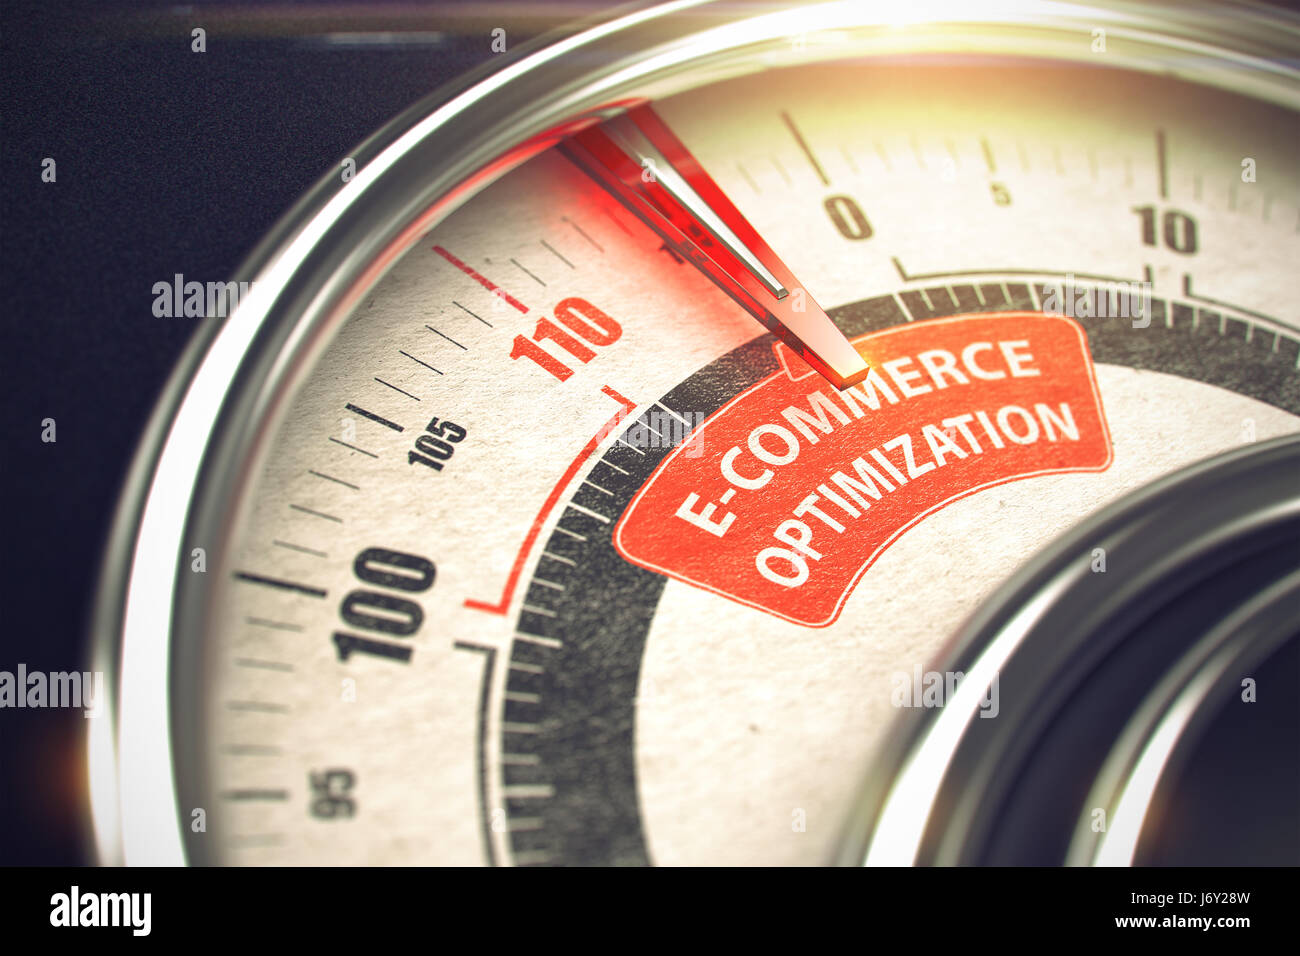 E-Commerce Optimization - Business Mode Concept. 3D. Stock Photo